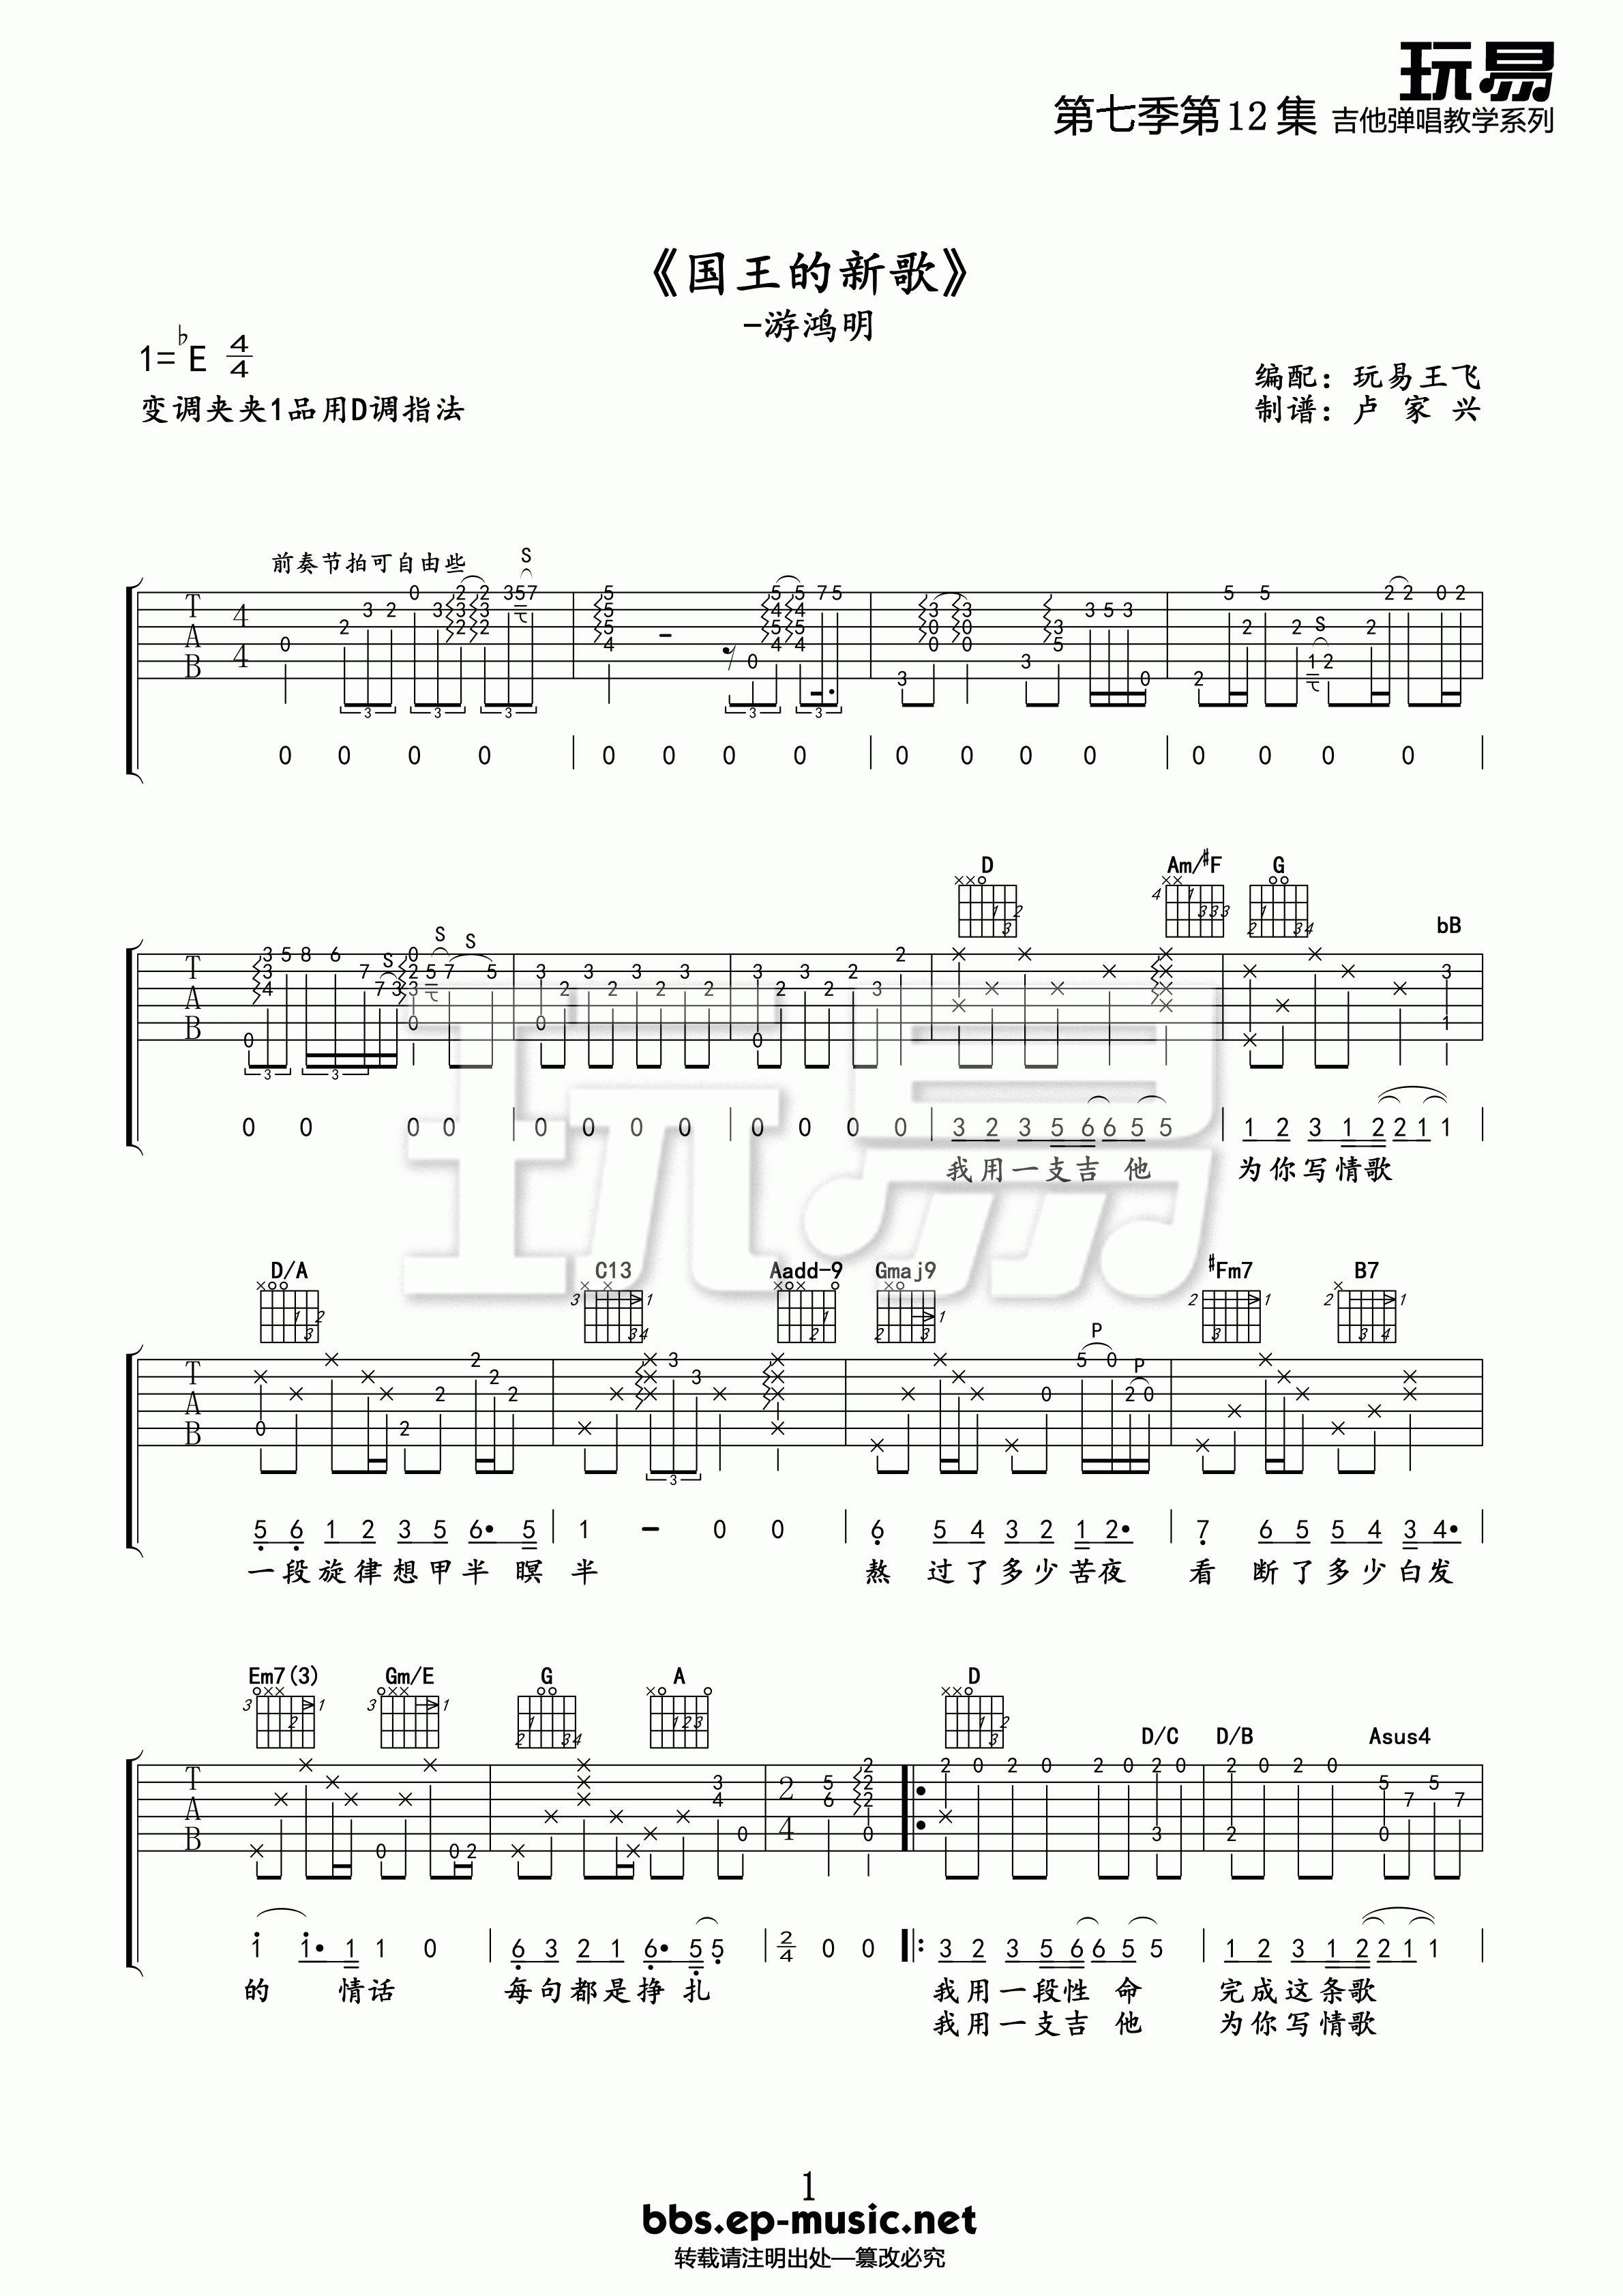 国王的新歌吉他谱第(1)页